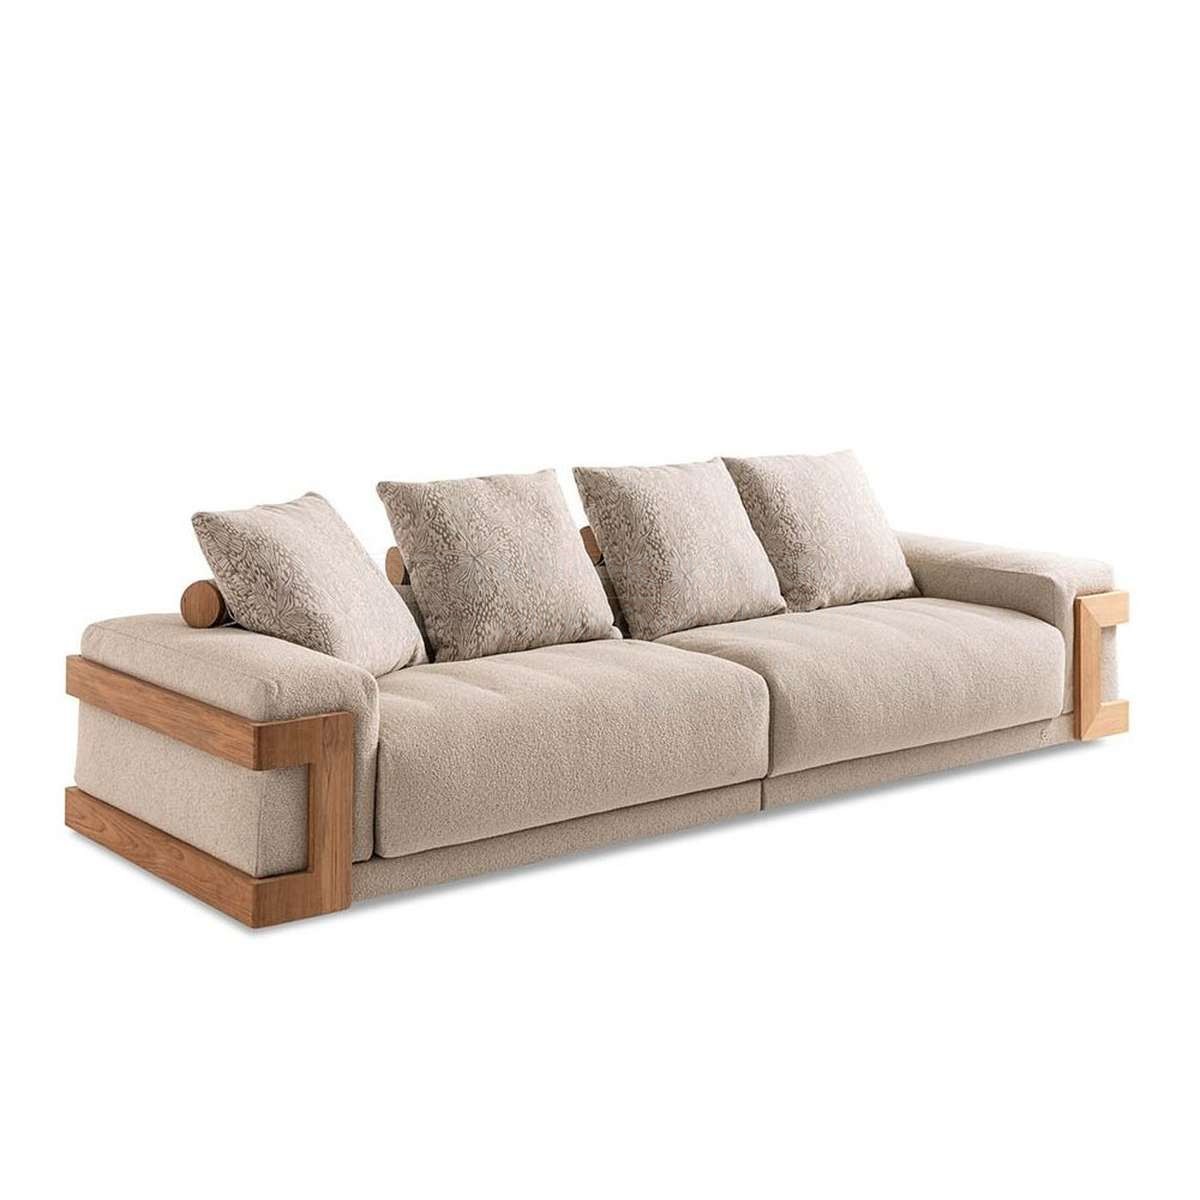 Прямой диван Cabo teak sofa  из Италии фабрики FENDI Casa